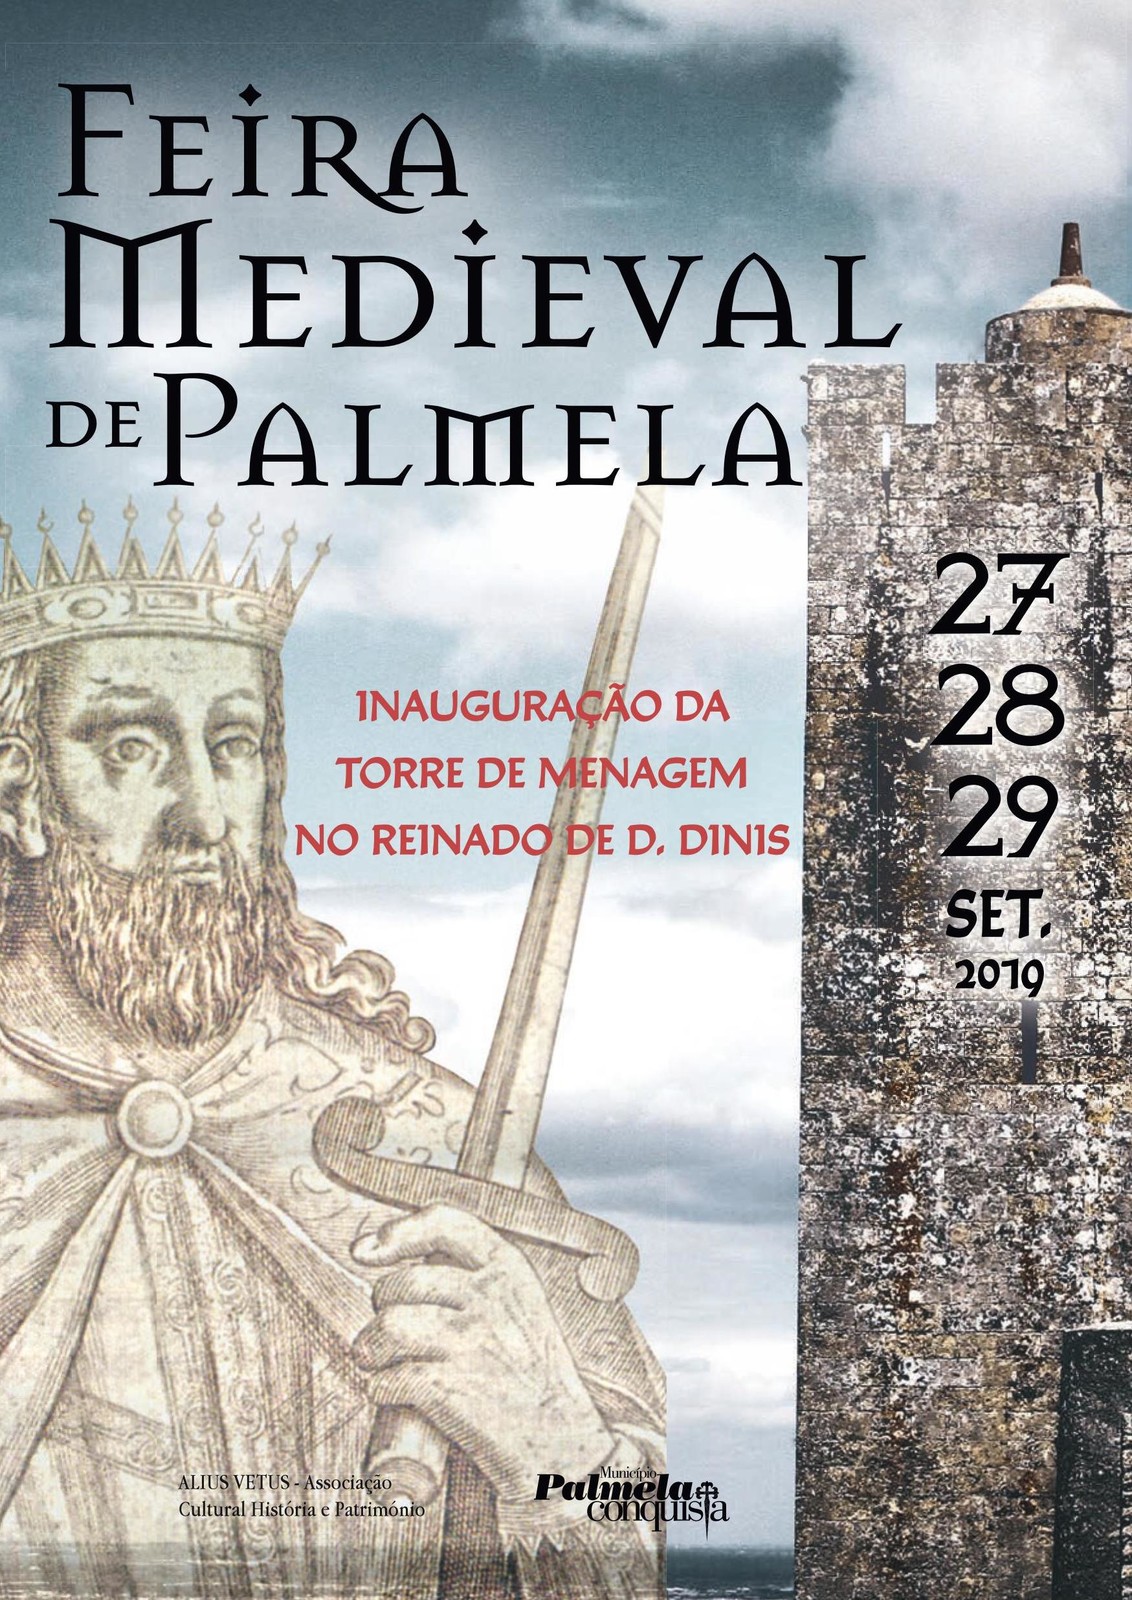 Bilhetes para a Feira Medieval de Palmela disponíveis a partir de 29 de agosto